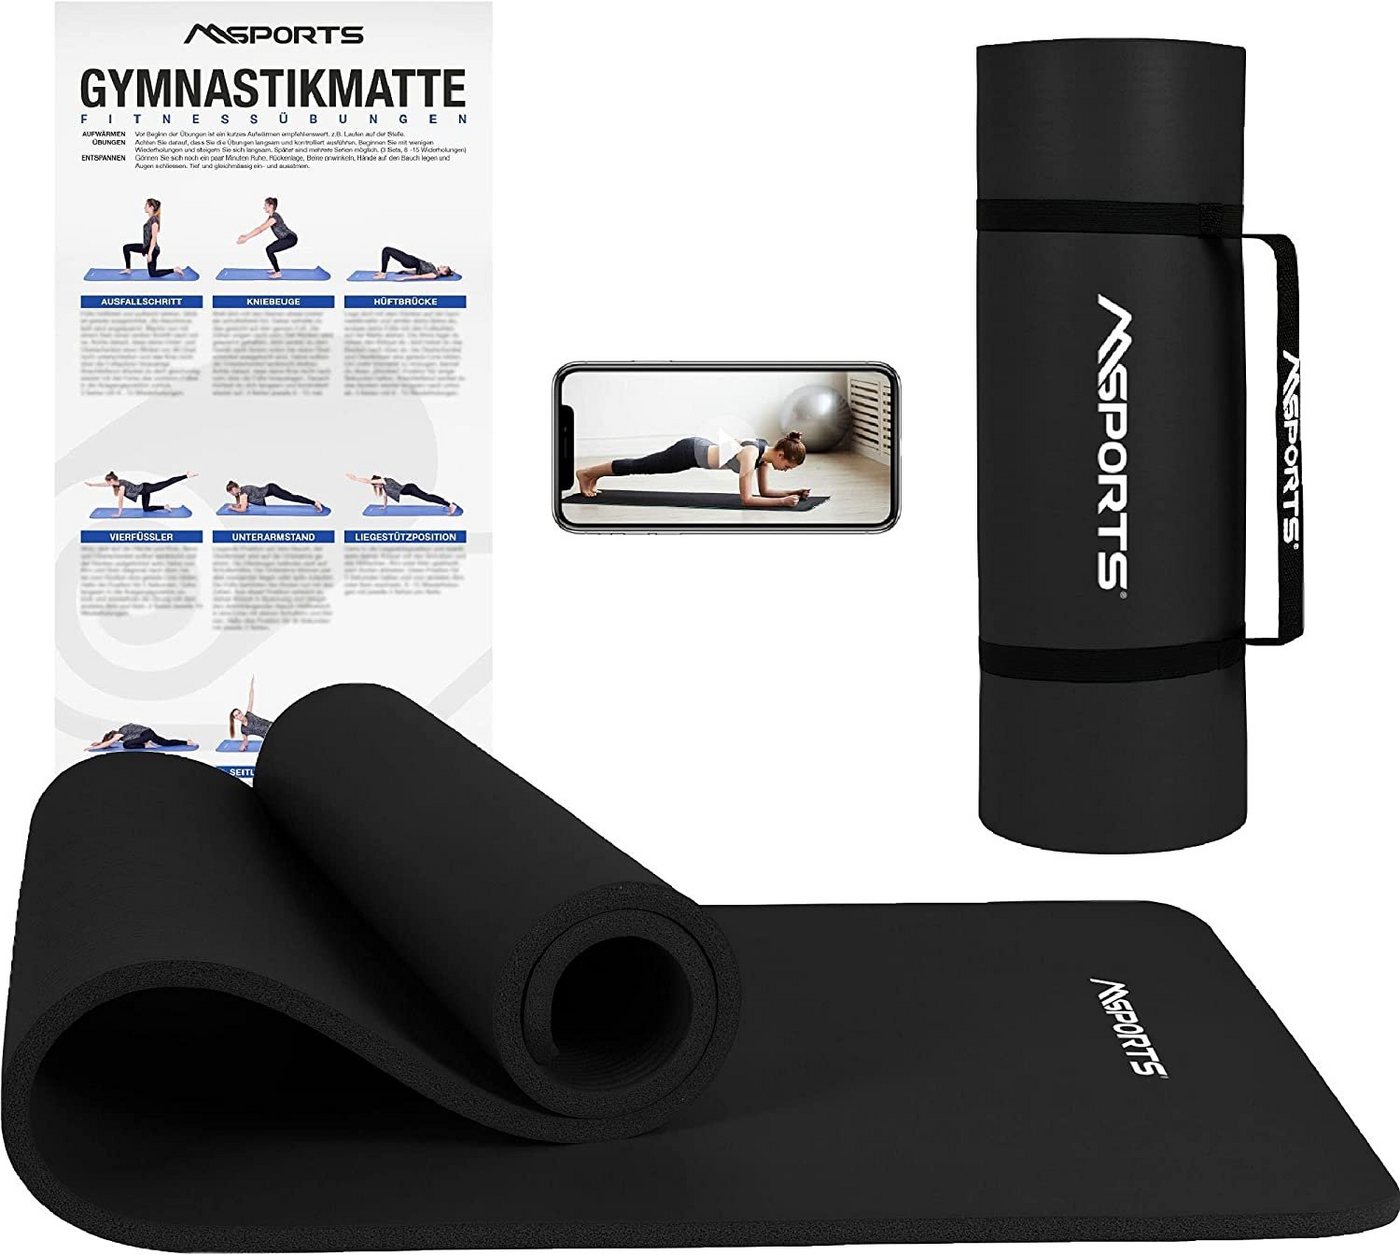 MSports® Gymnastikmatte Yogamatte rutschfest inkl. Tragegurt + Poster + Workout App von MSports®